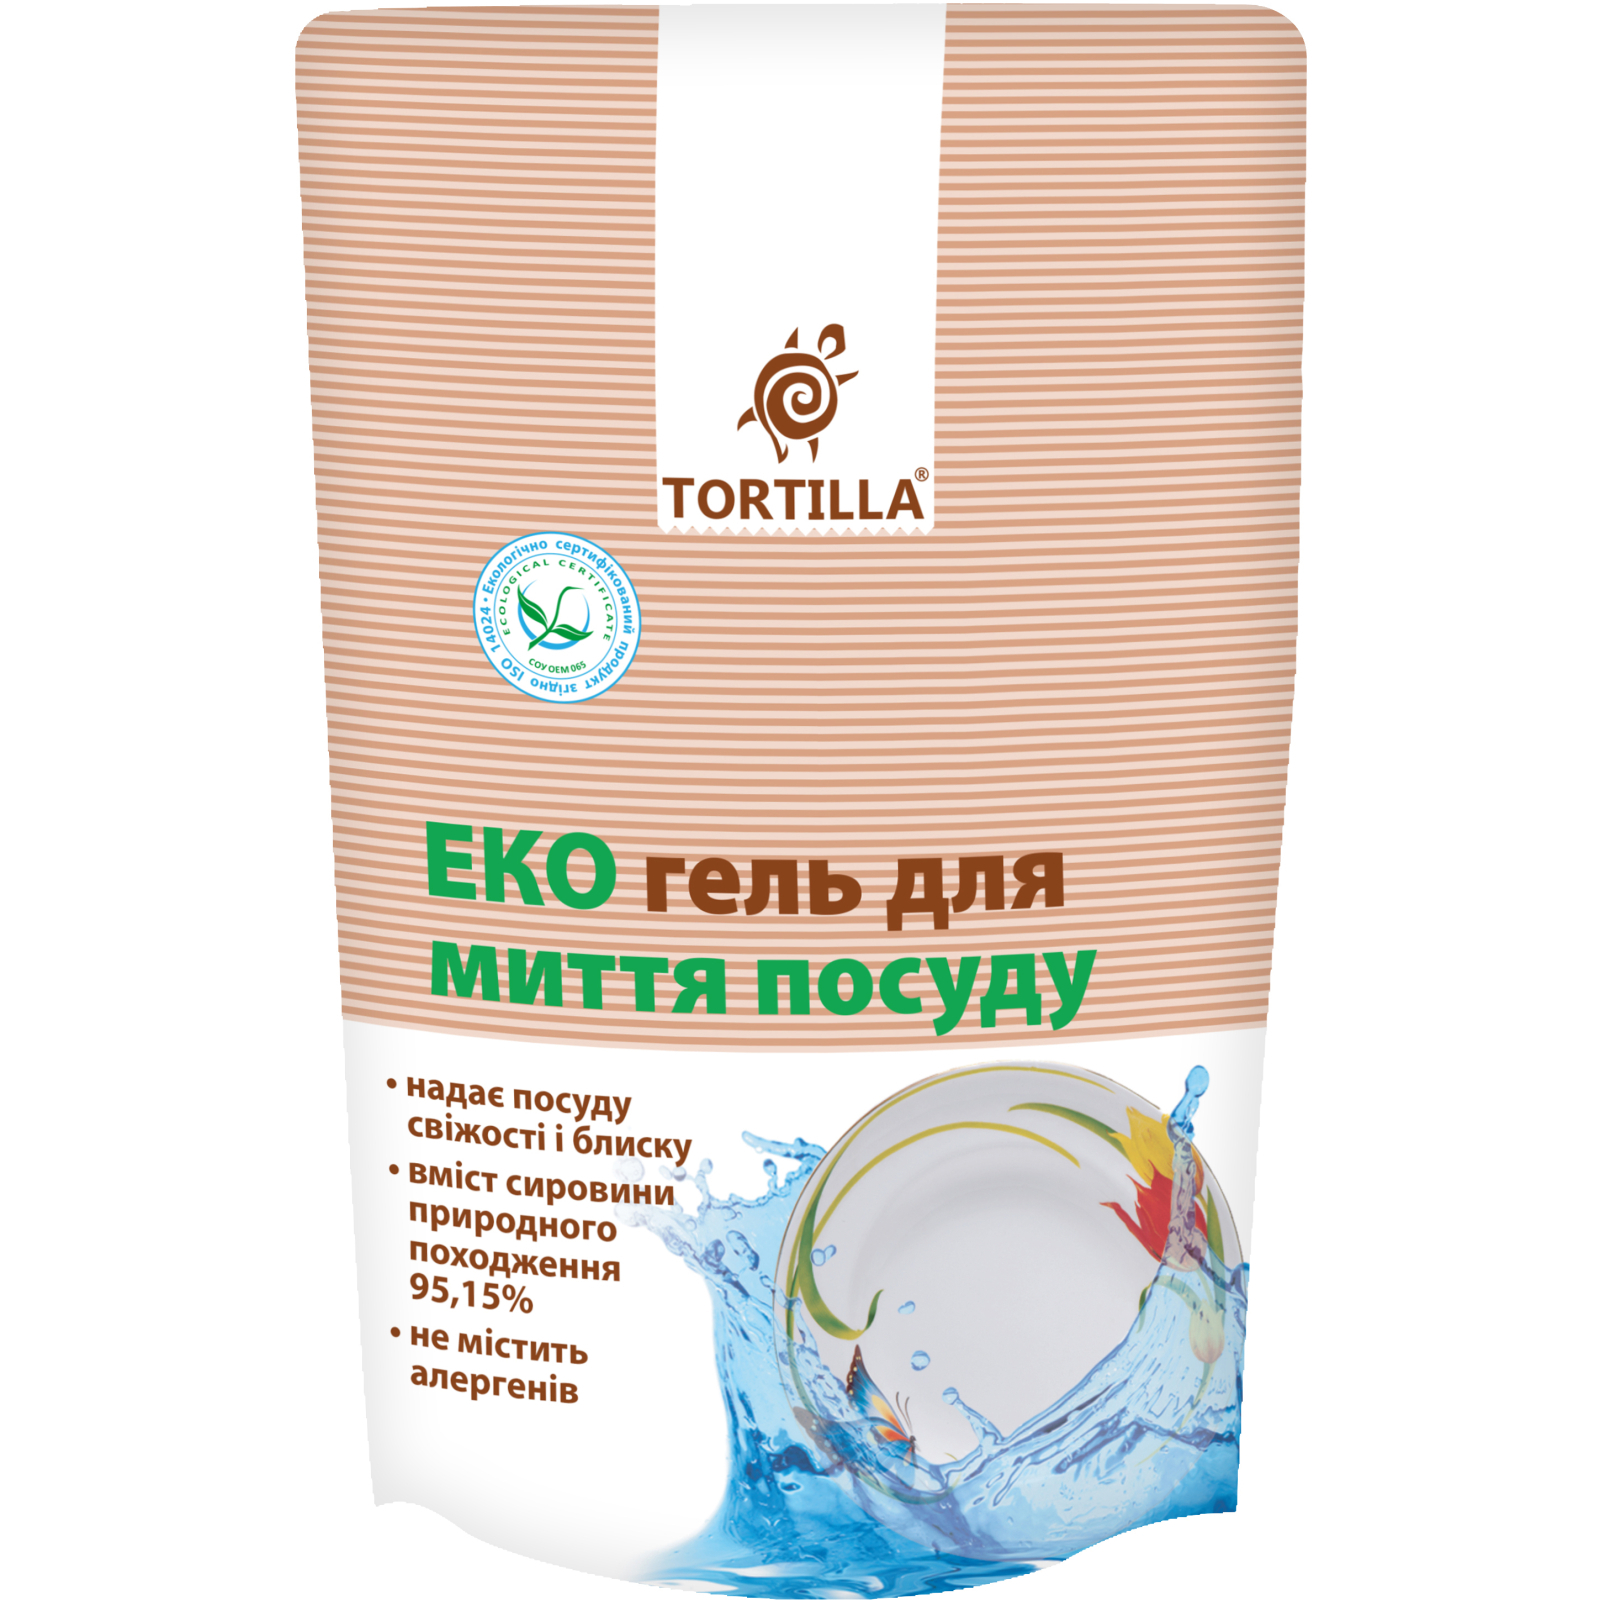 Средство для ручного мытья посуды Tortilla Эко гель запаска 500 мл (4820178060974)